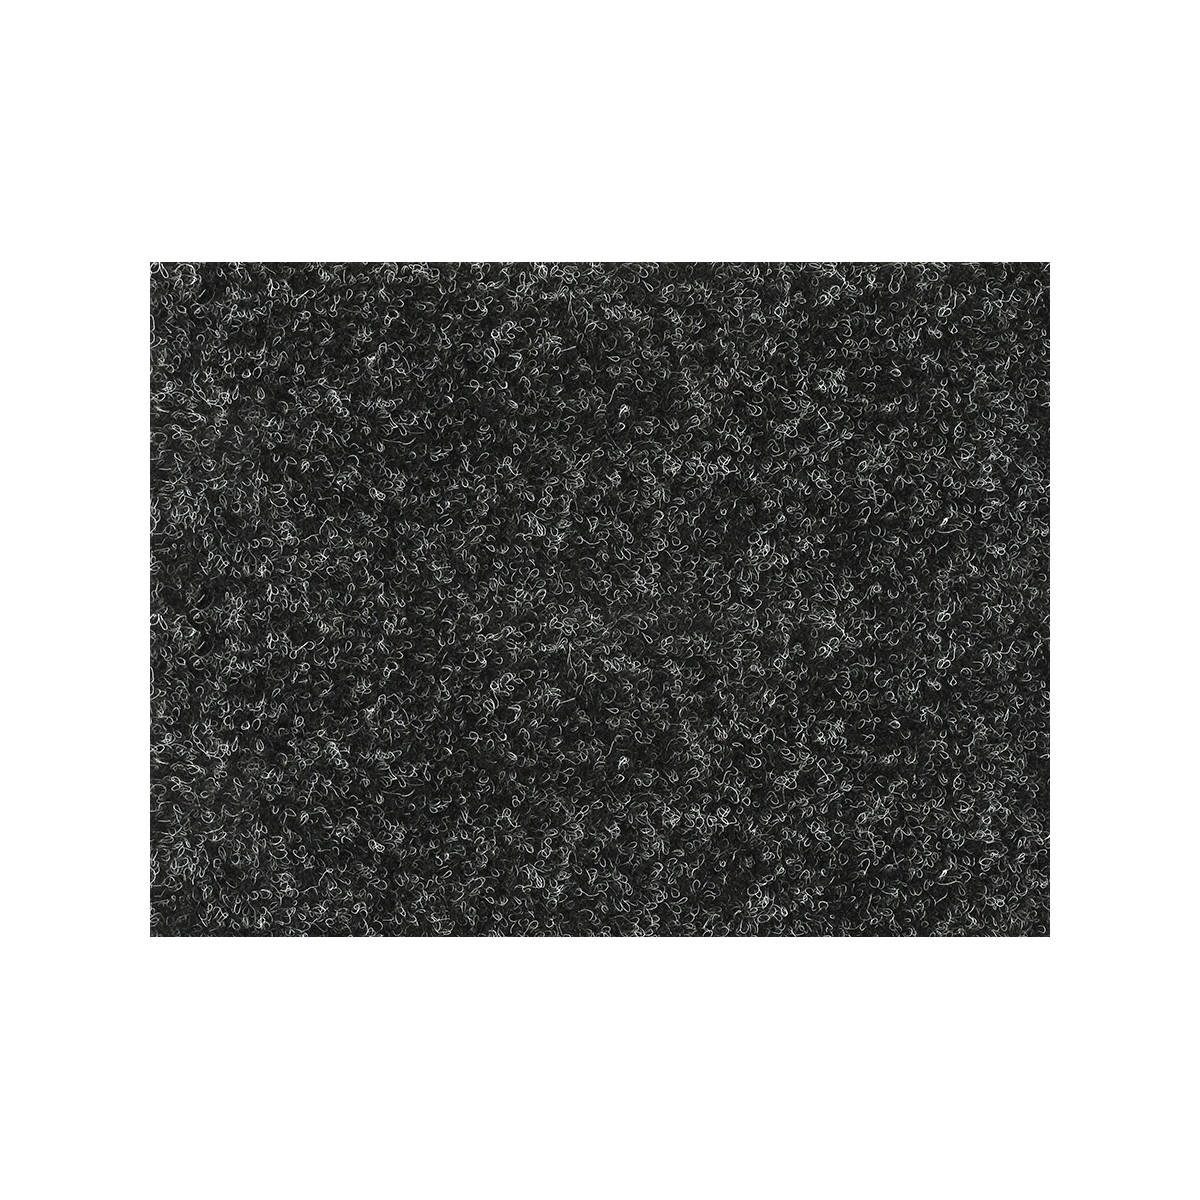 AKCE: 400x145 cm Metrážový koberec Santana 50 černá s podkladem resine, zátěžový